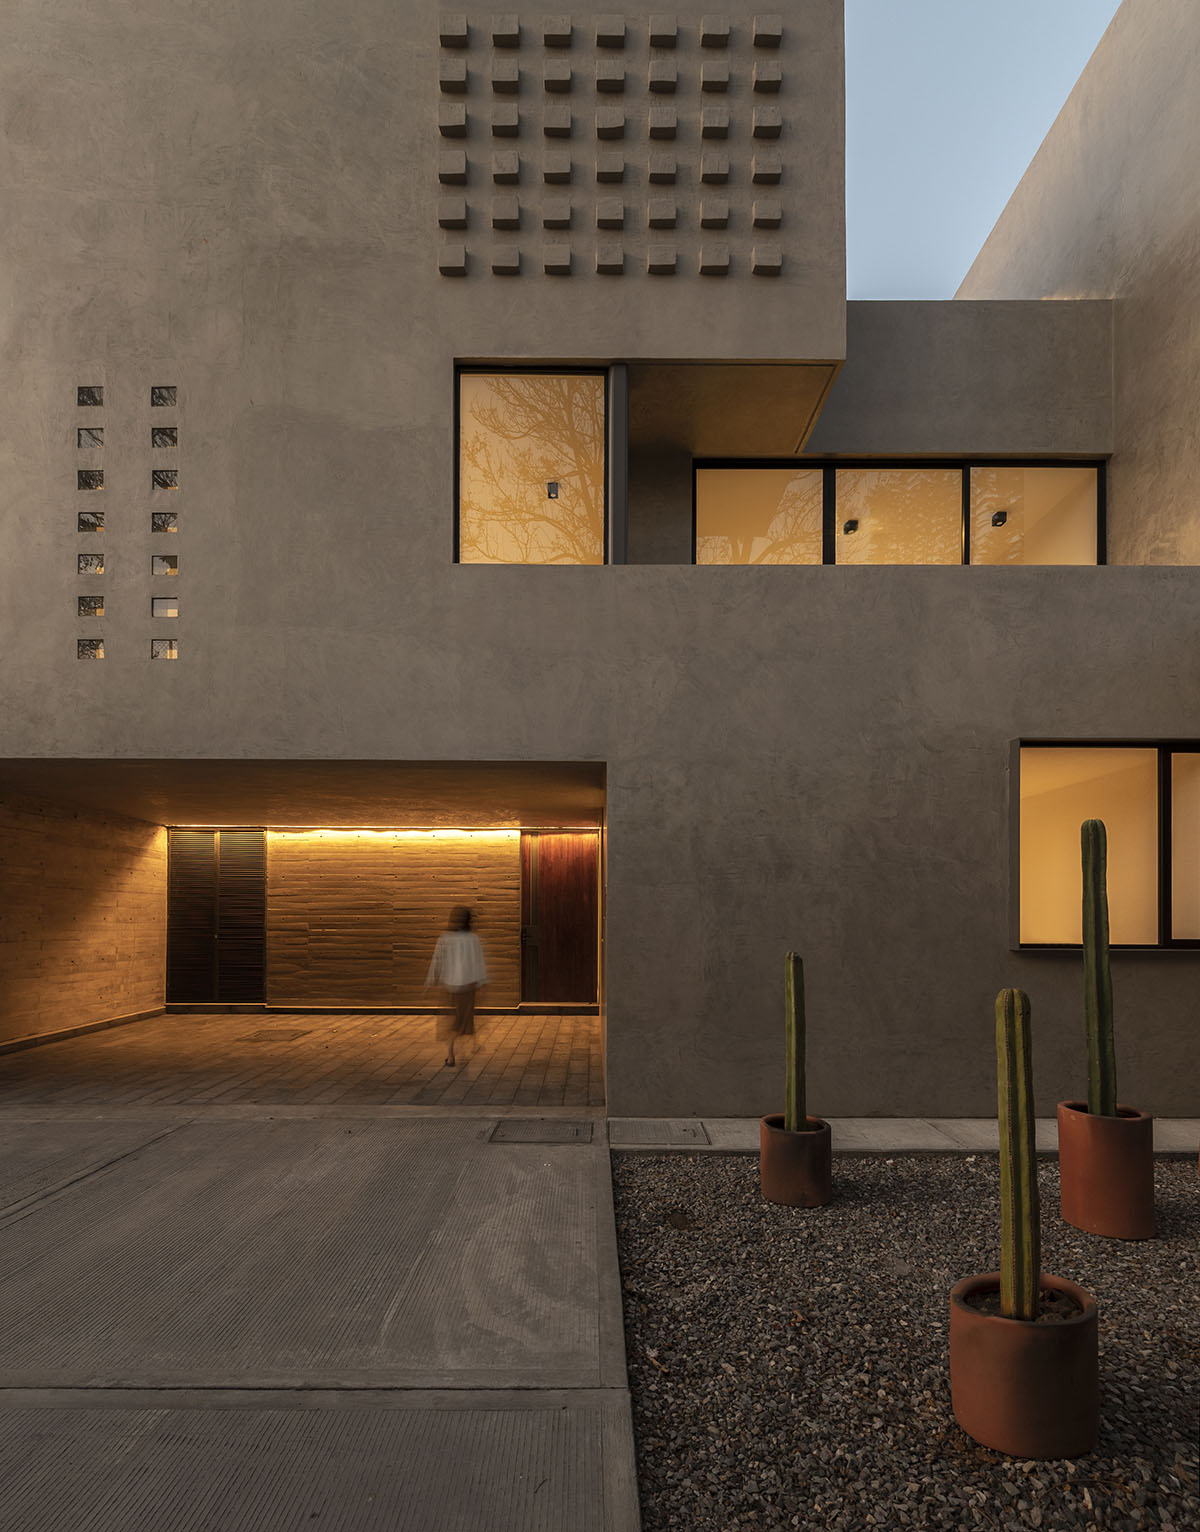 Espacio 18 Arquitectura проектирует жилье, играющее с твердыми телами и пустотами в Оахаке, Мексика. 